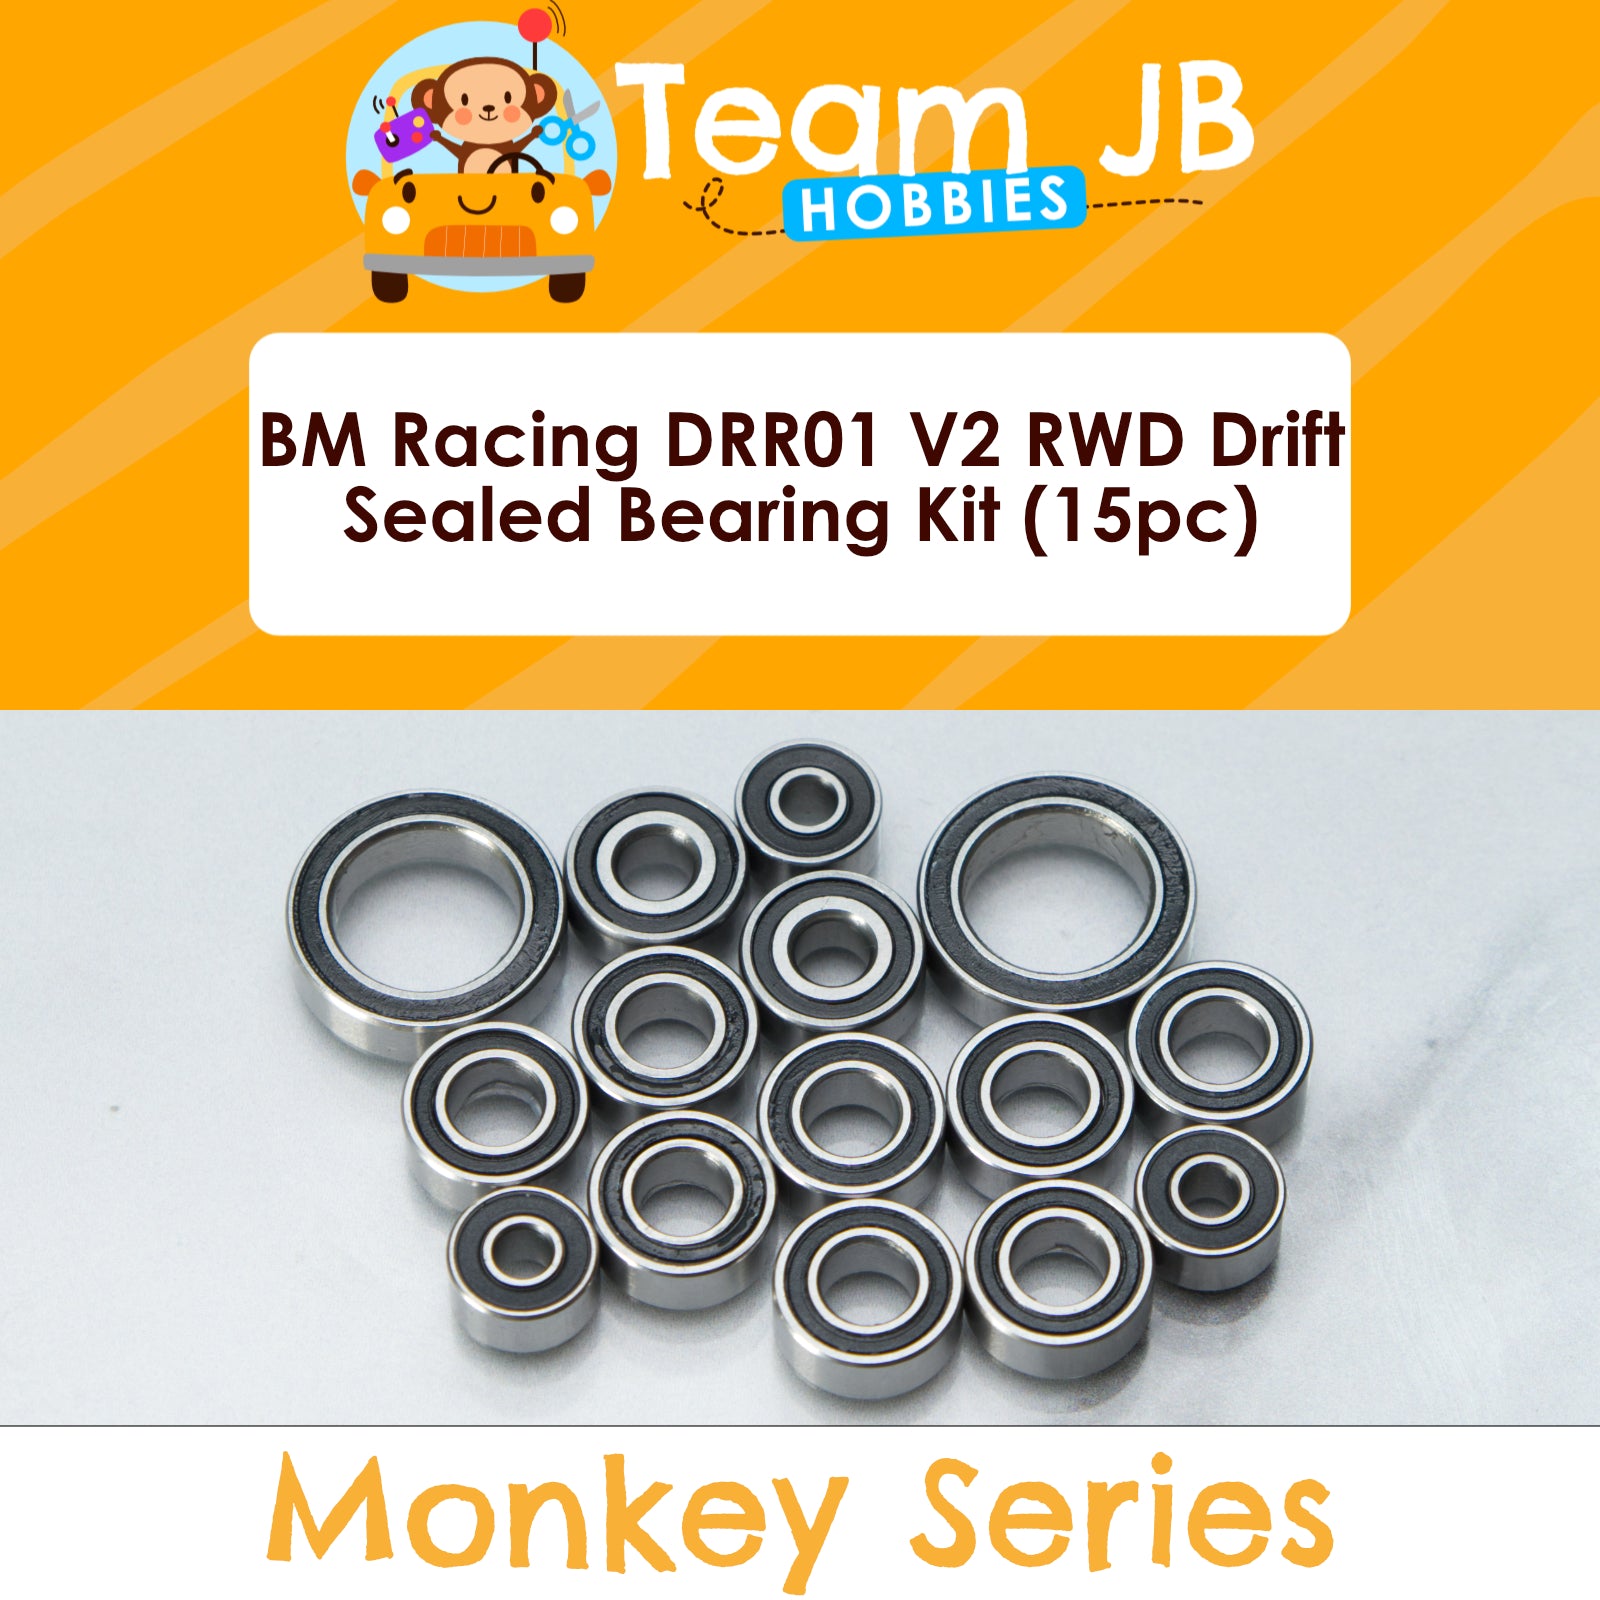 BM Racing DRR01 V2 RWD Drift - Sealed Bearing Kit